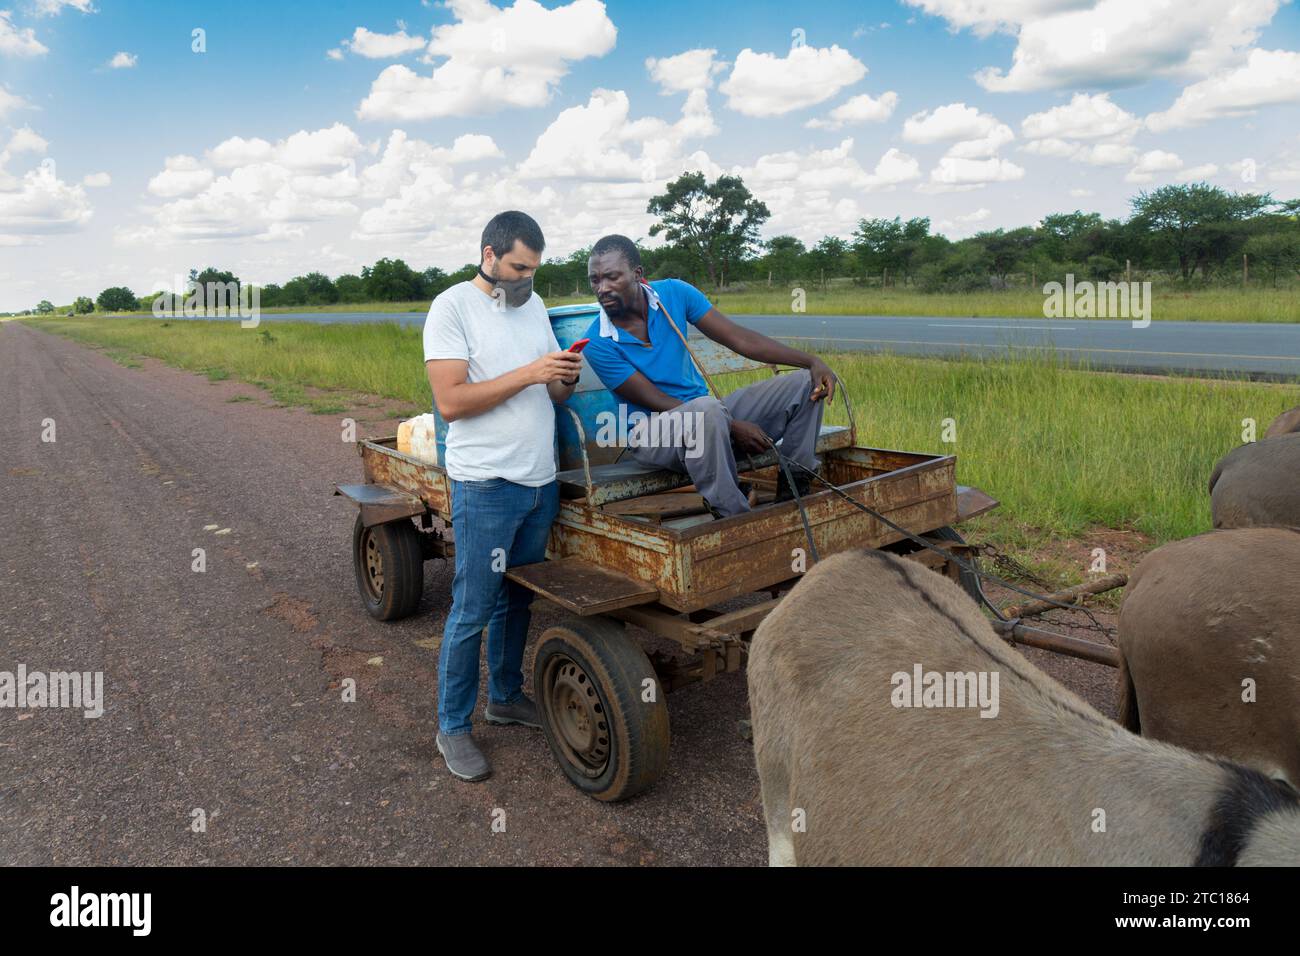 un uomo africano con un carrello d'asino che vende acqua nel villaggio, un uomo caucasico con il telefono che fa un accordo Foto Stock